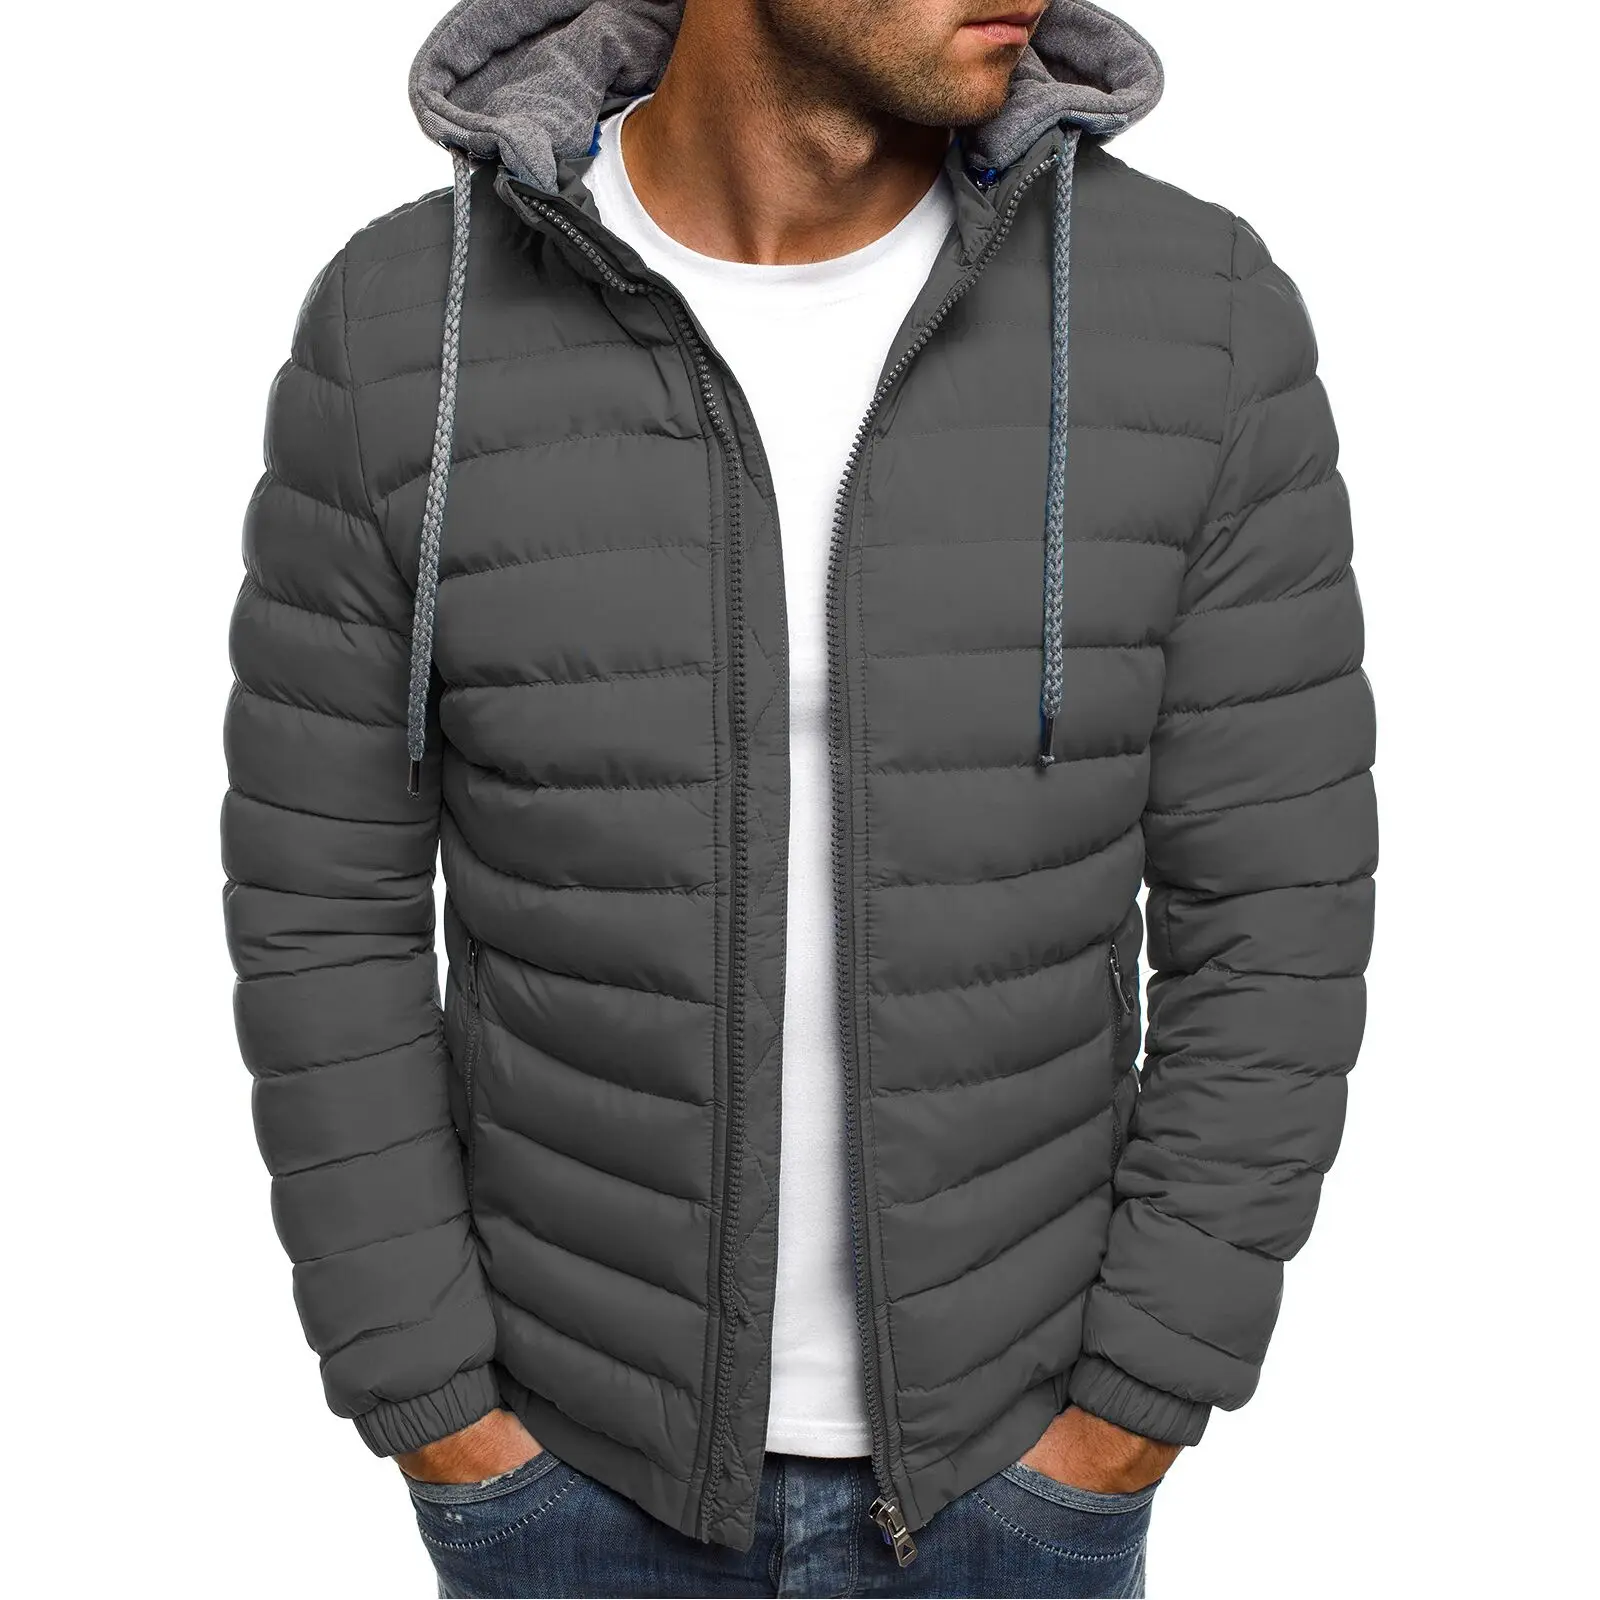 CYSINCOS, зимняя мужская куртка, пальто с капюшоном, повседневные мужские куртки на молнии, парка, теплая одежда для мужчин, уличная одежда, зимнее пальто